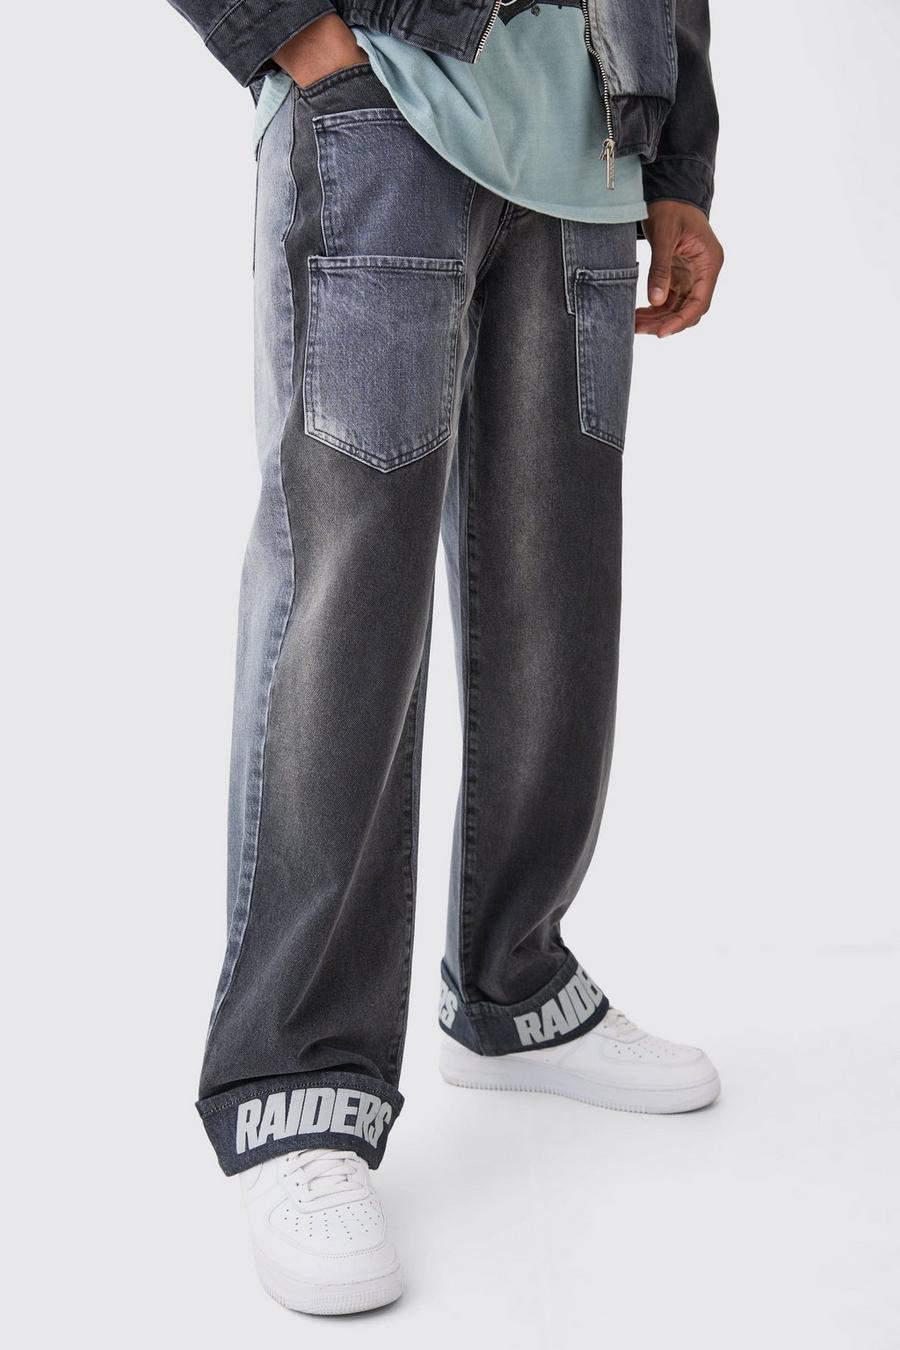 Lockere gespleißte Nfl Raiders Jeans mit Taschen, Charcoal image number 1